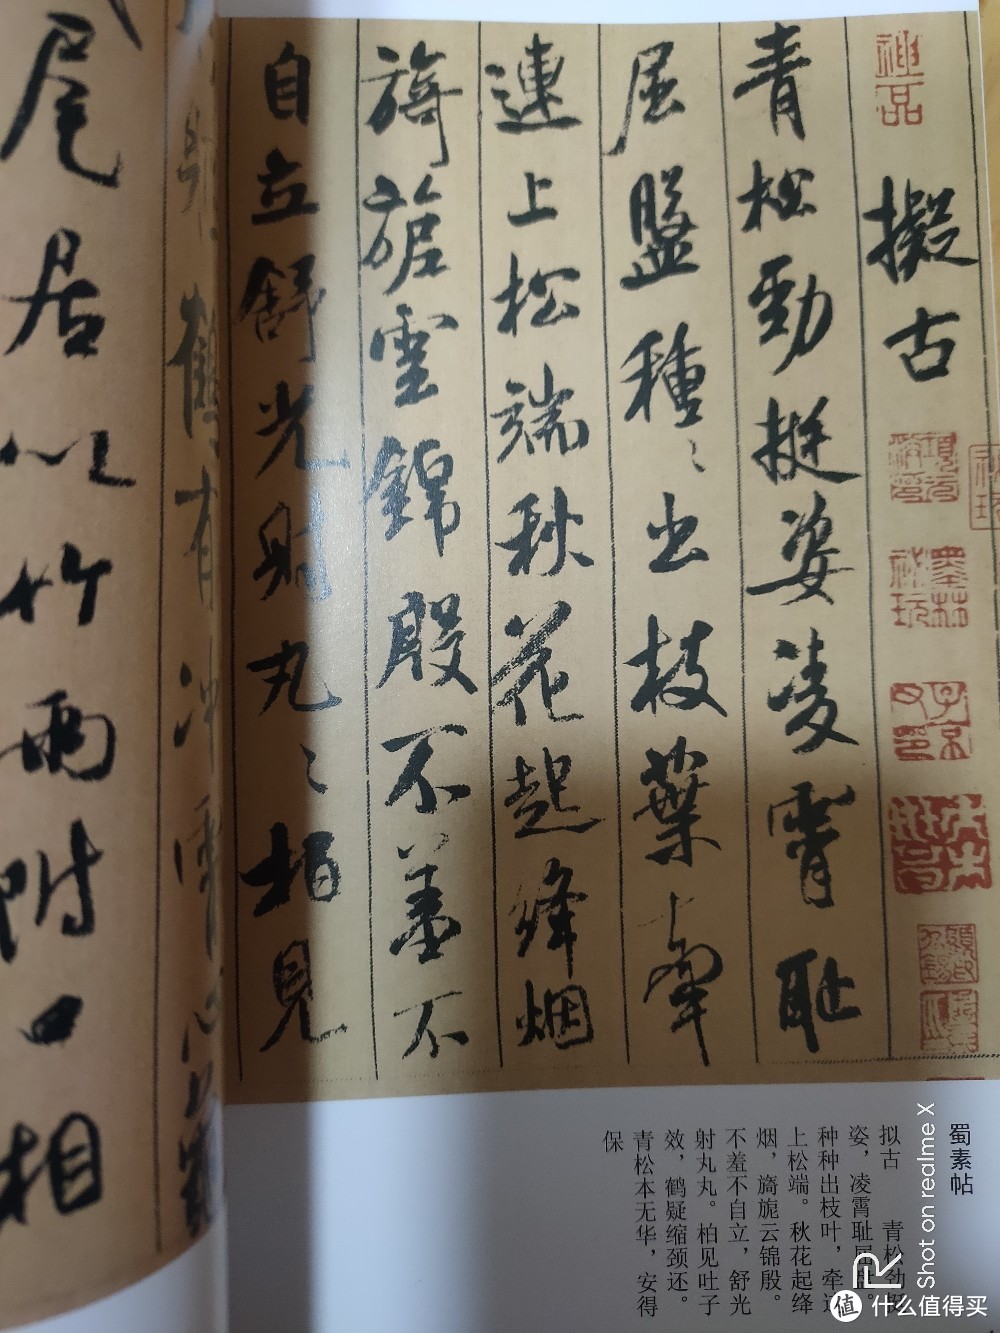 毛笔书法字帖套装:《中国历代名家书法名贴》介绍